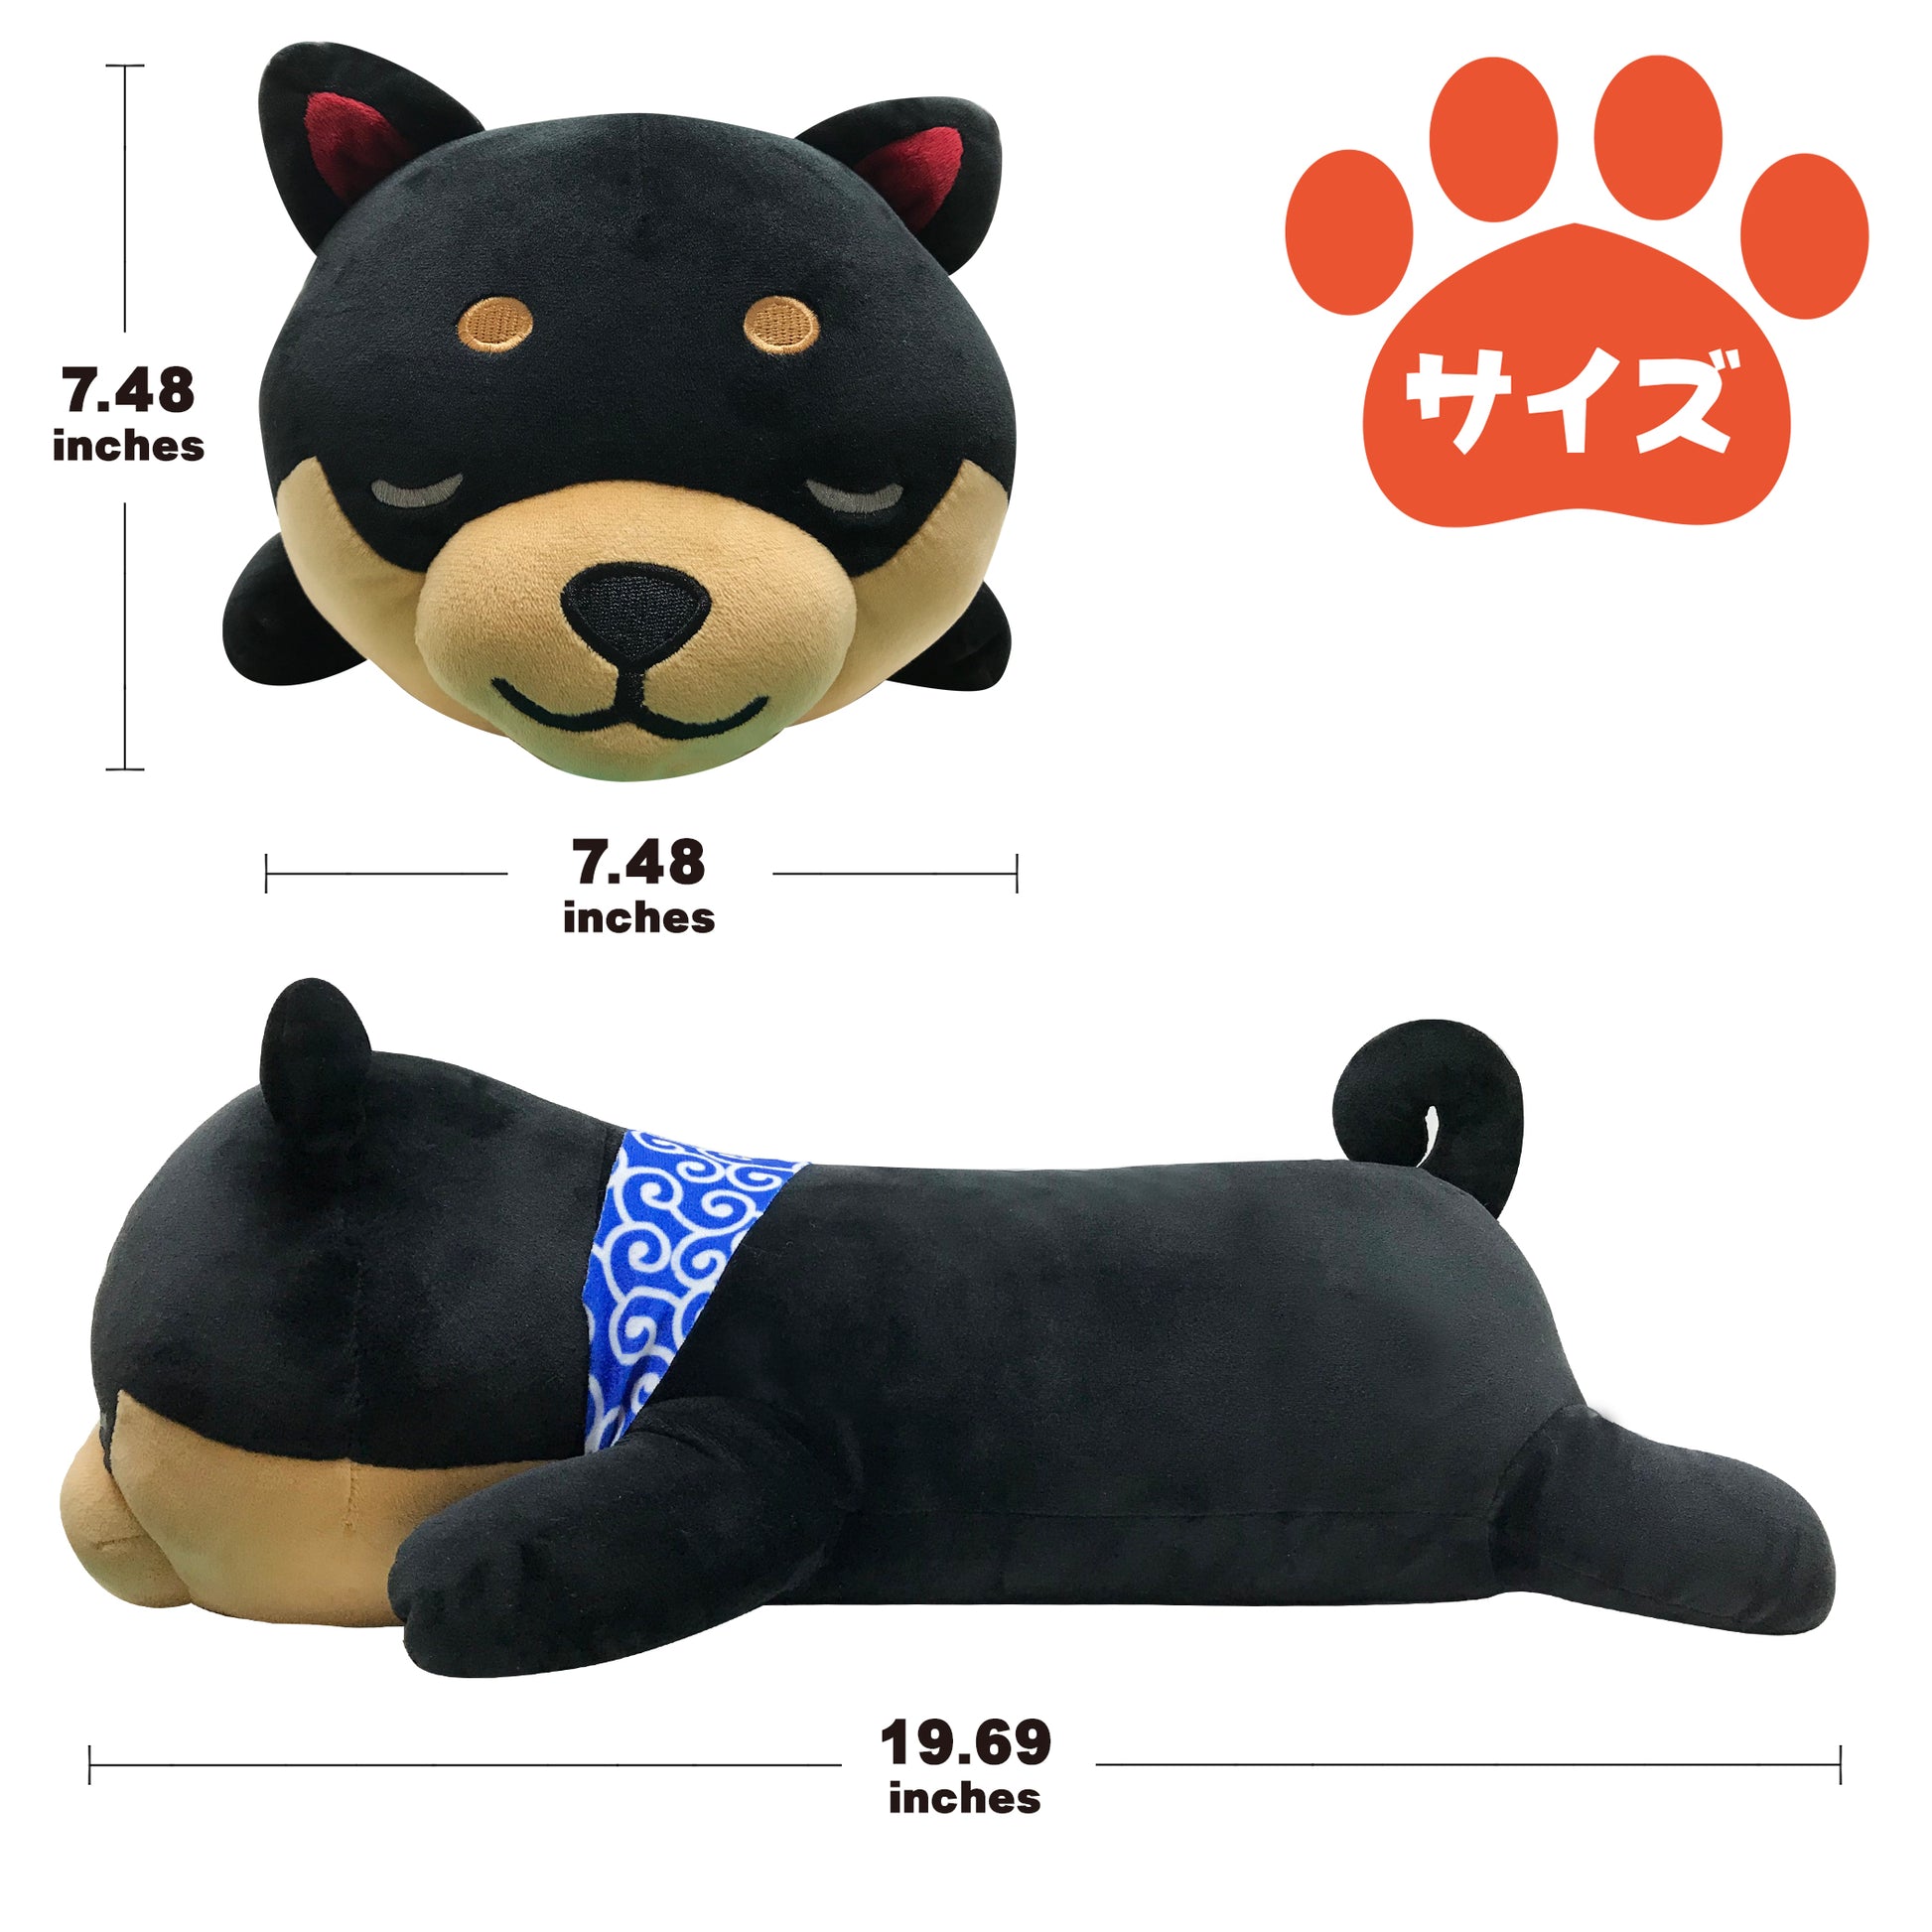 Size of stuffed dog Mameshiba black pillow